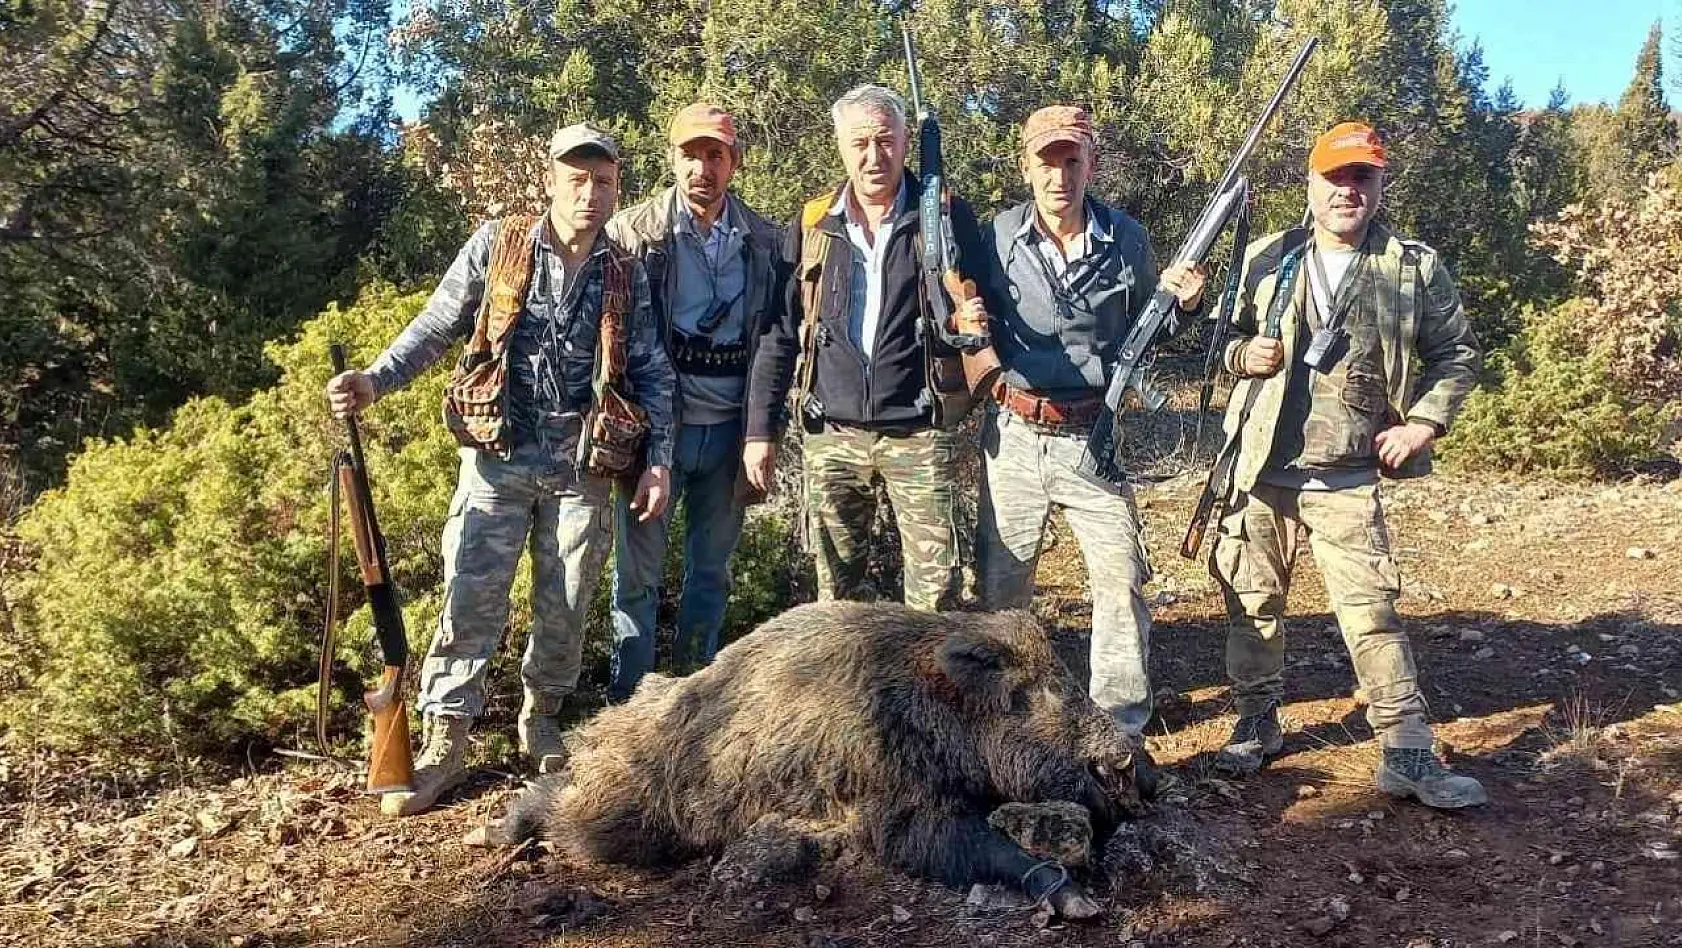 Hisarcıklı avcılar yaklaşık 350 kilo ağırlığında domuz avladı